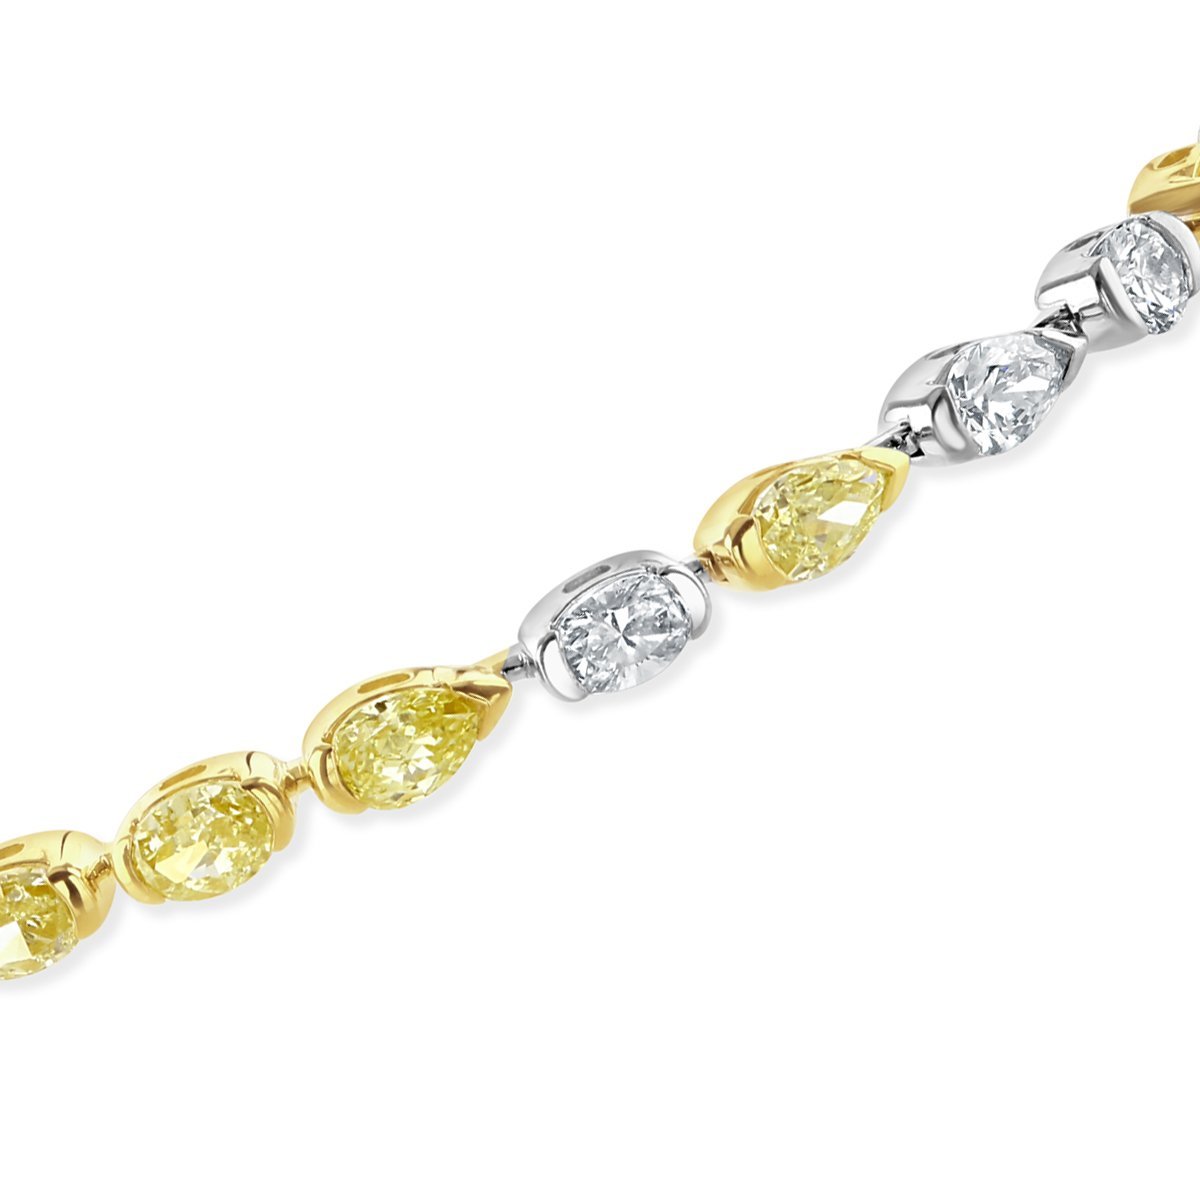 White & Yellow Diamond Bracelet